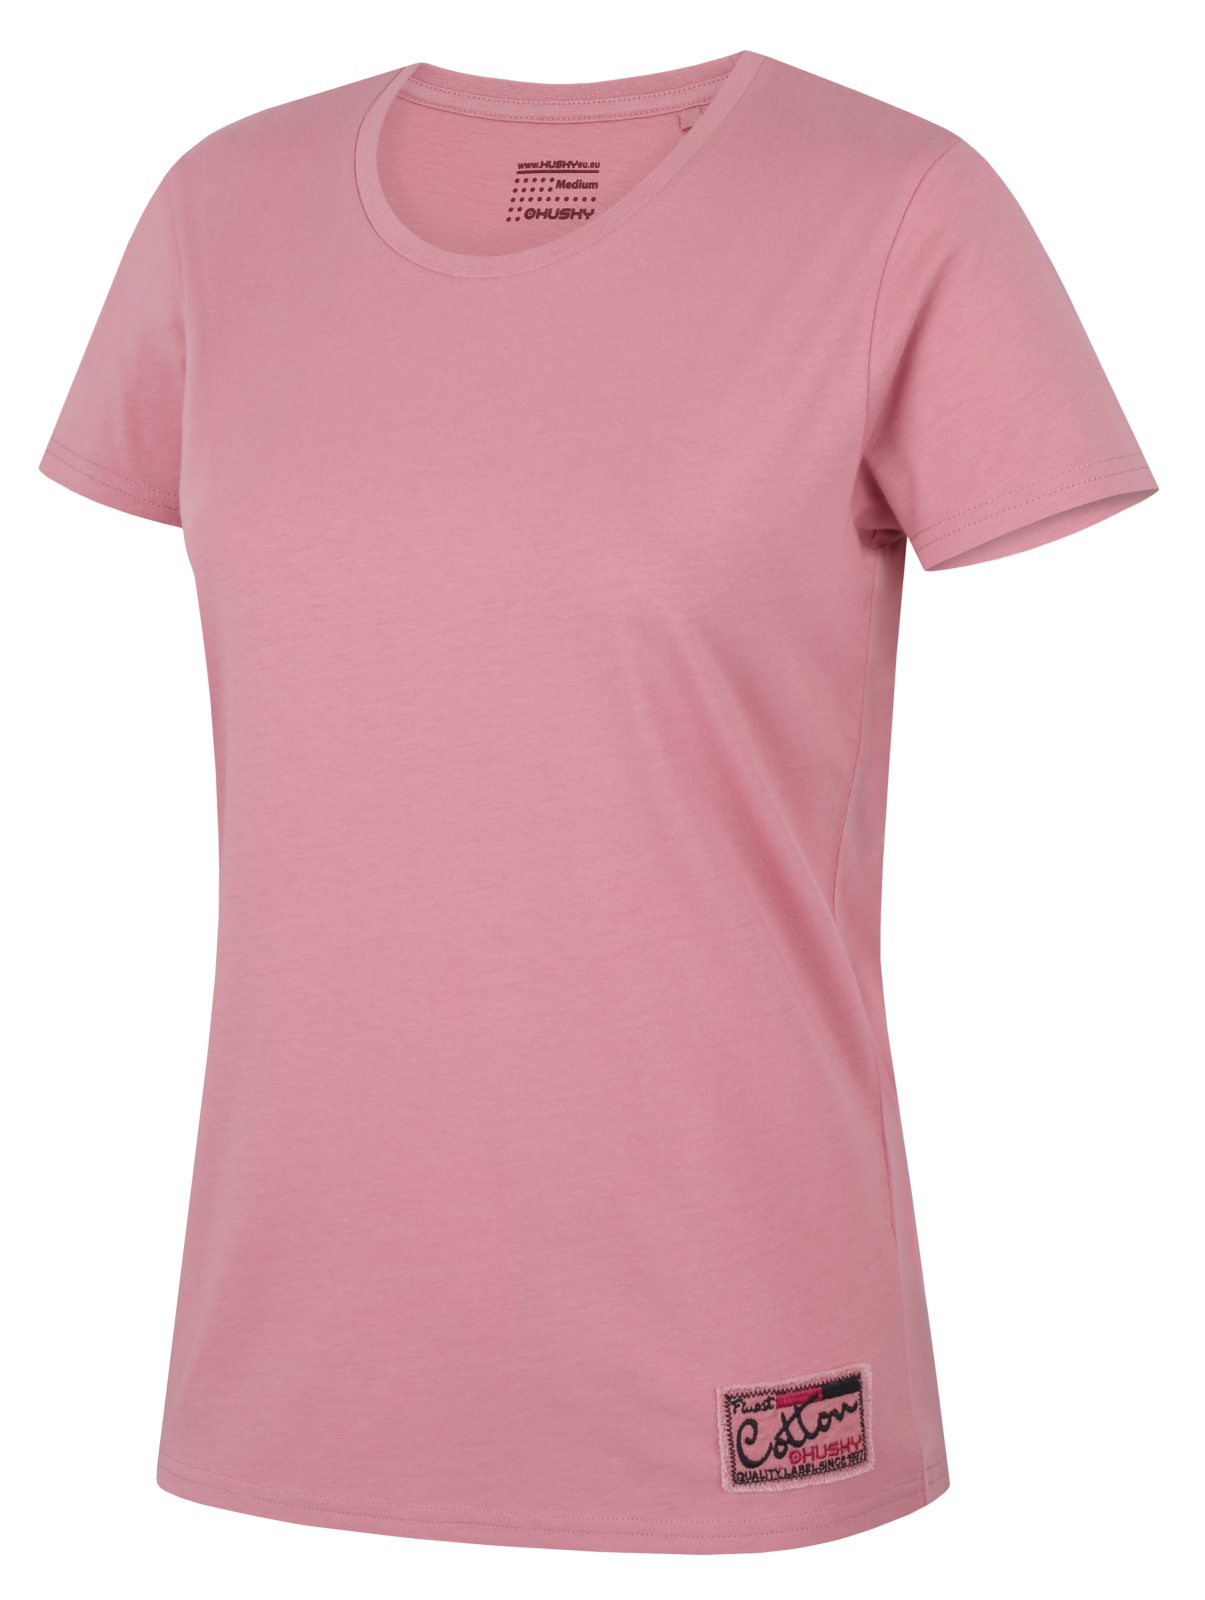 Husky Dámské bavlněné triko Tee Base L pink Velikost: XL dámské tričko s krátkým rukávem